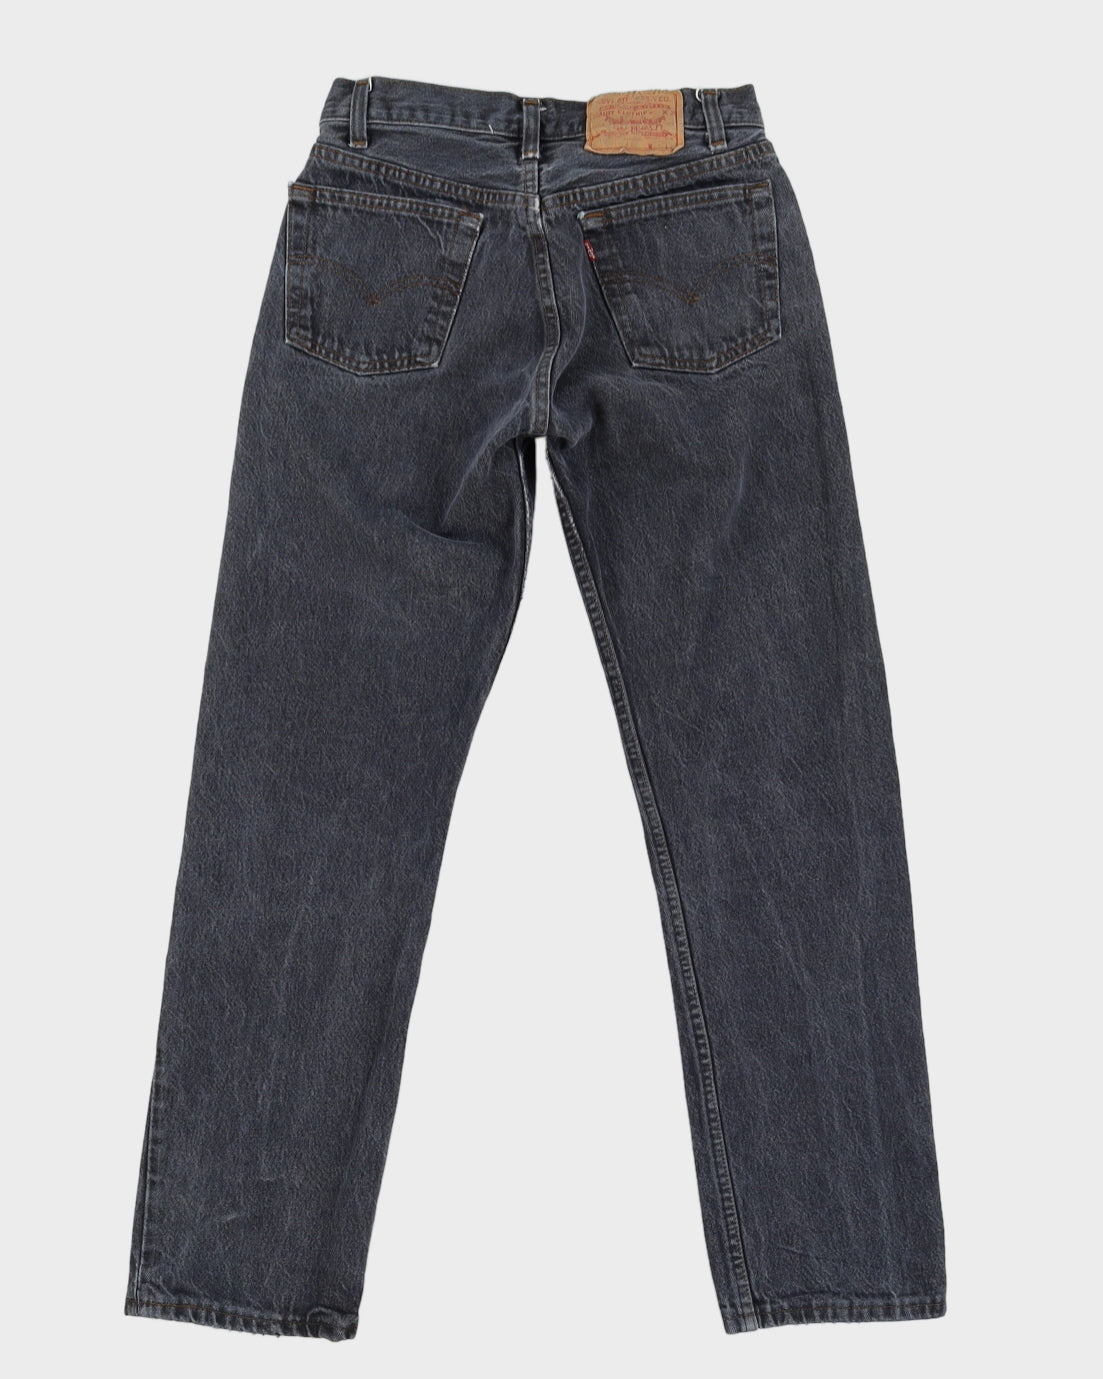 Vintage 90s Levi's 501 Washed Black Denim Jeans - W28